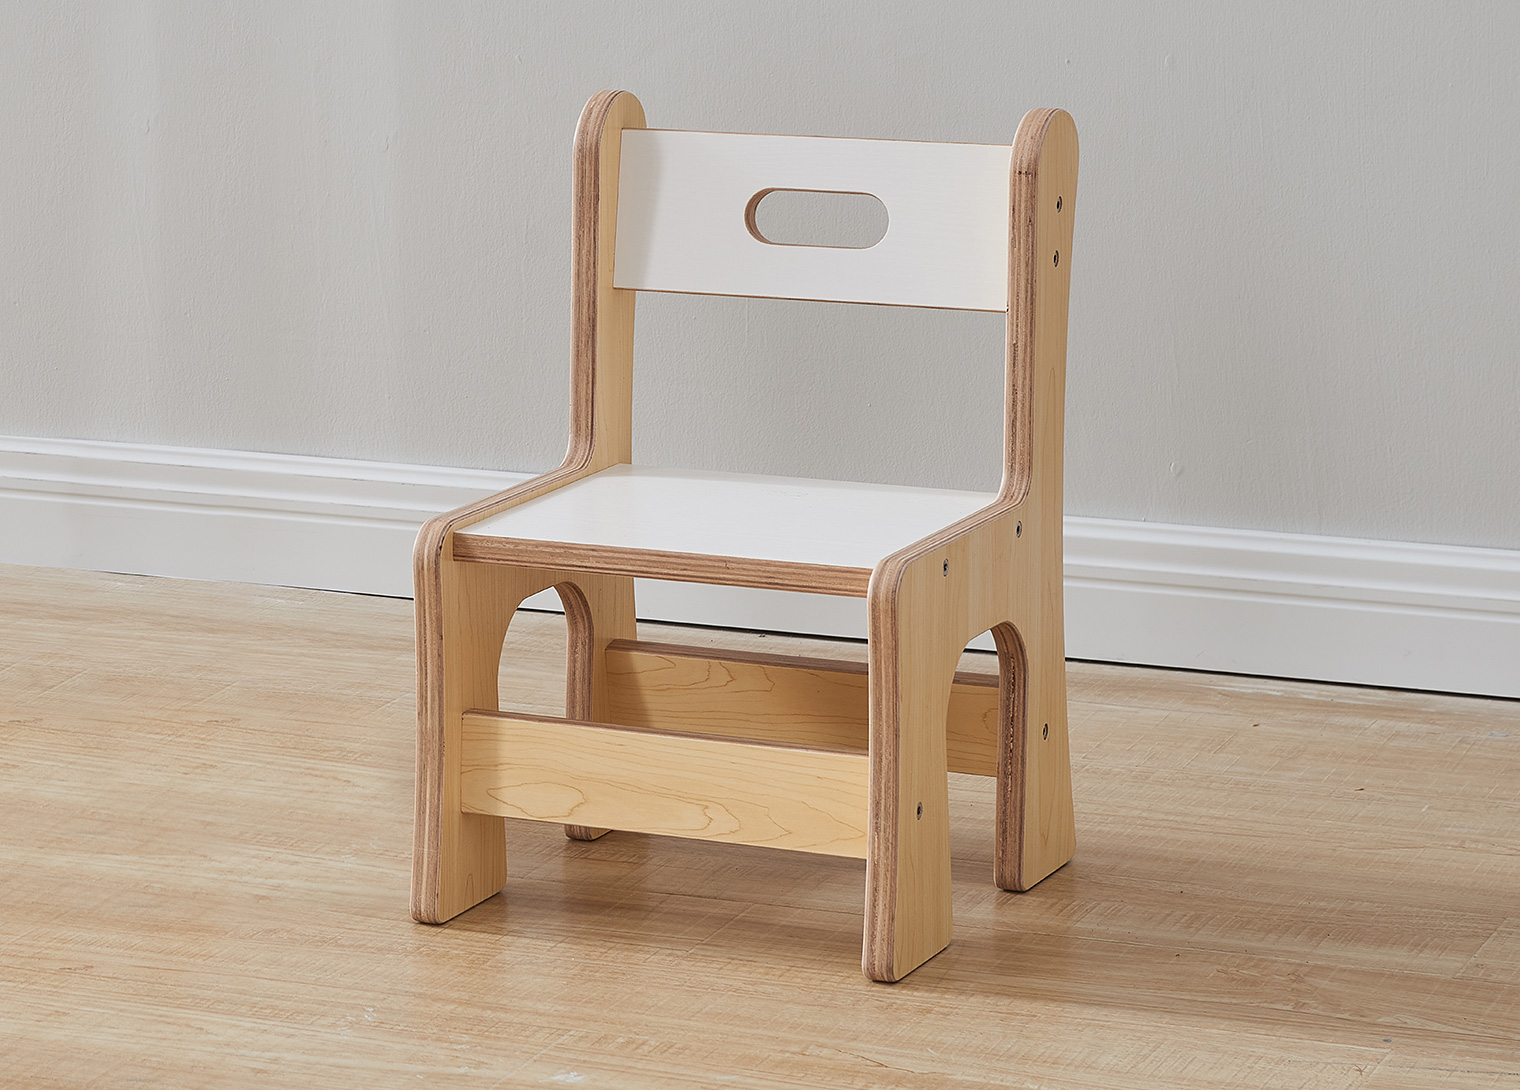 Snowdon - 230H Wooden Chair